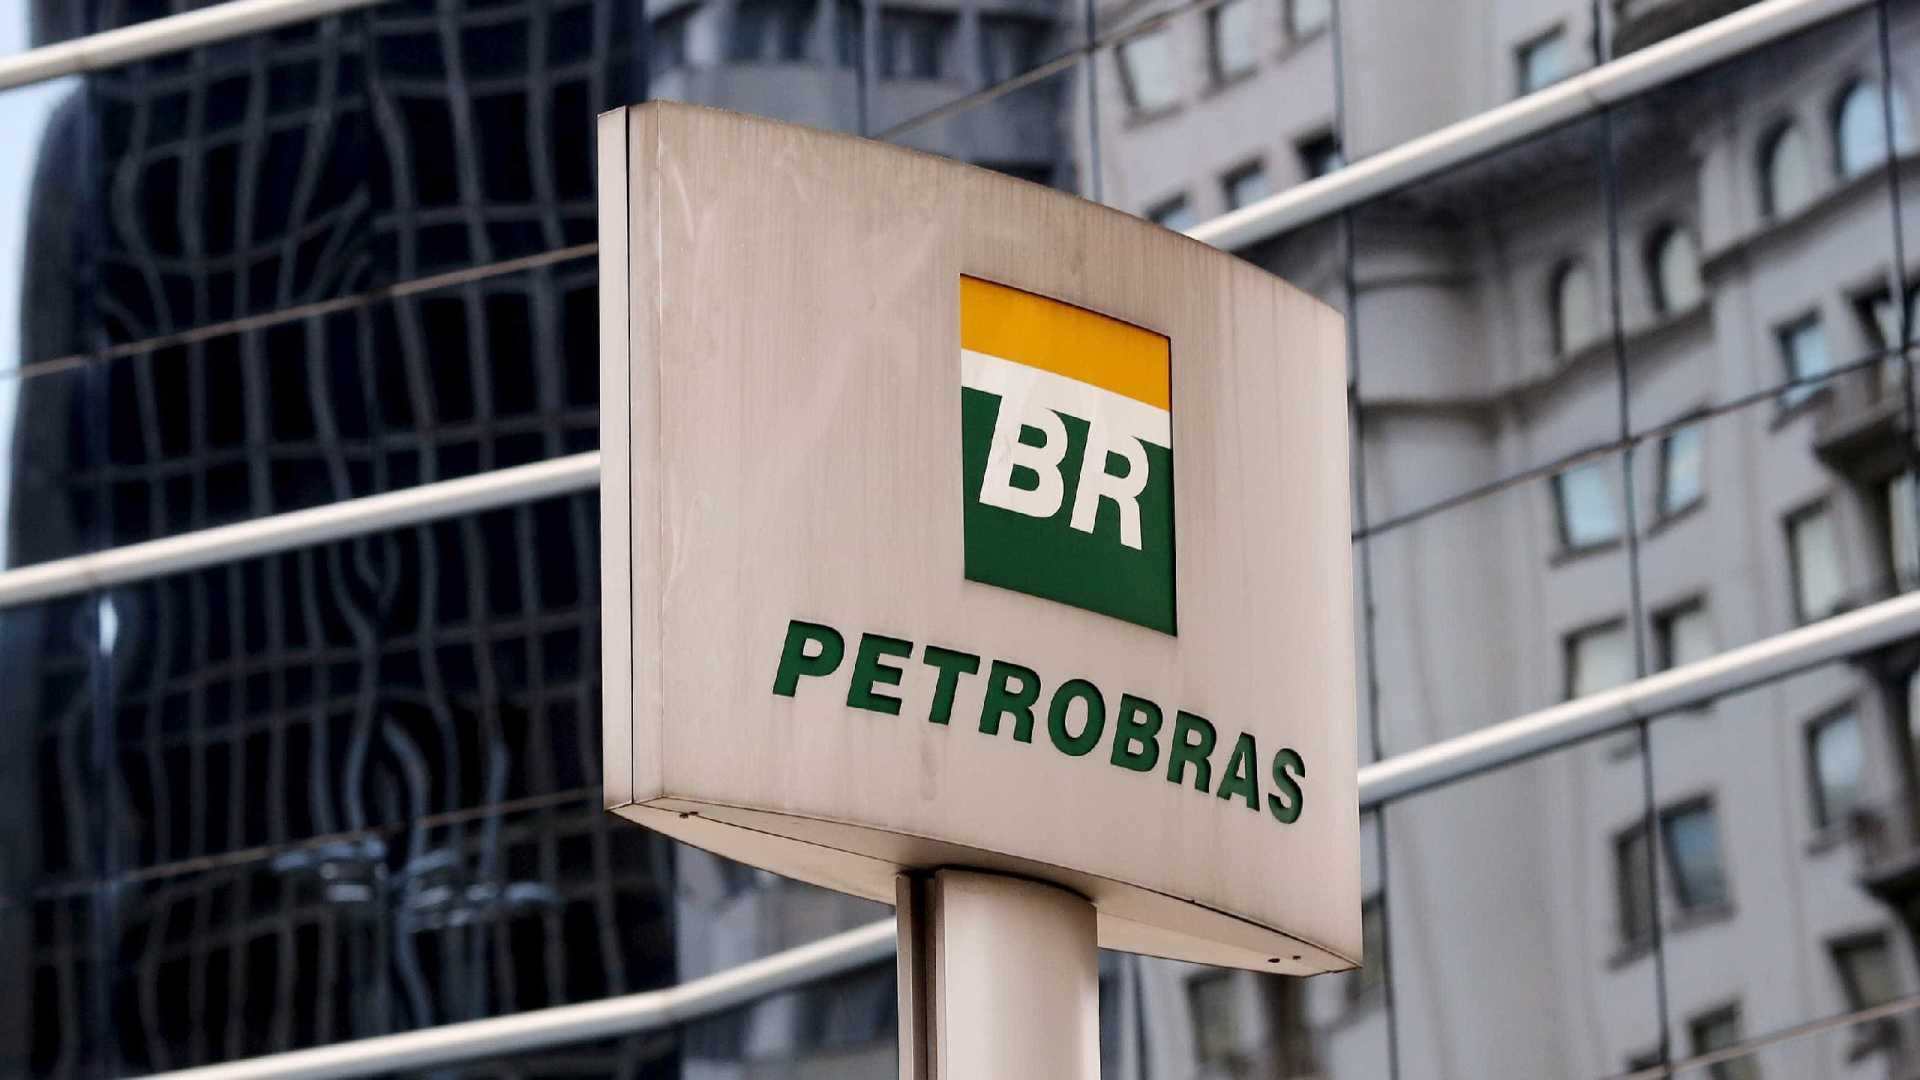 FIERN “acorda” e convoca sociedade a reagir contra desmonte da Petrobras